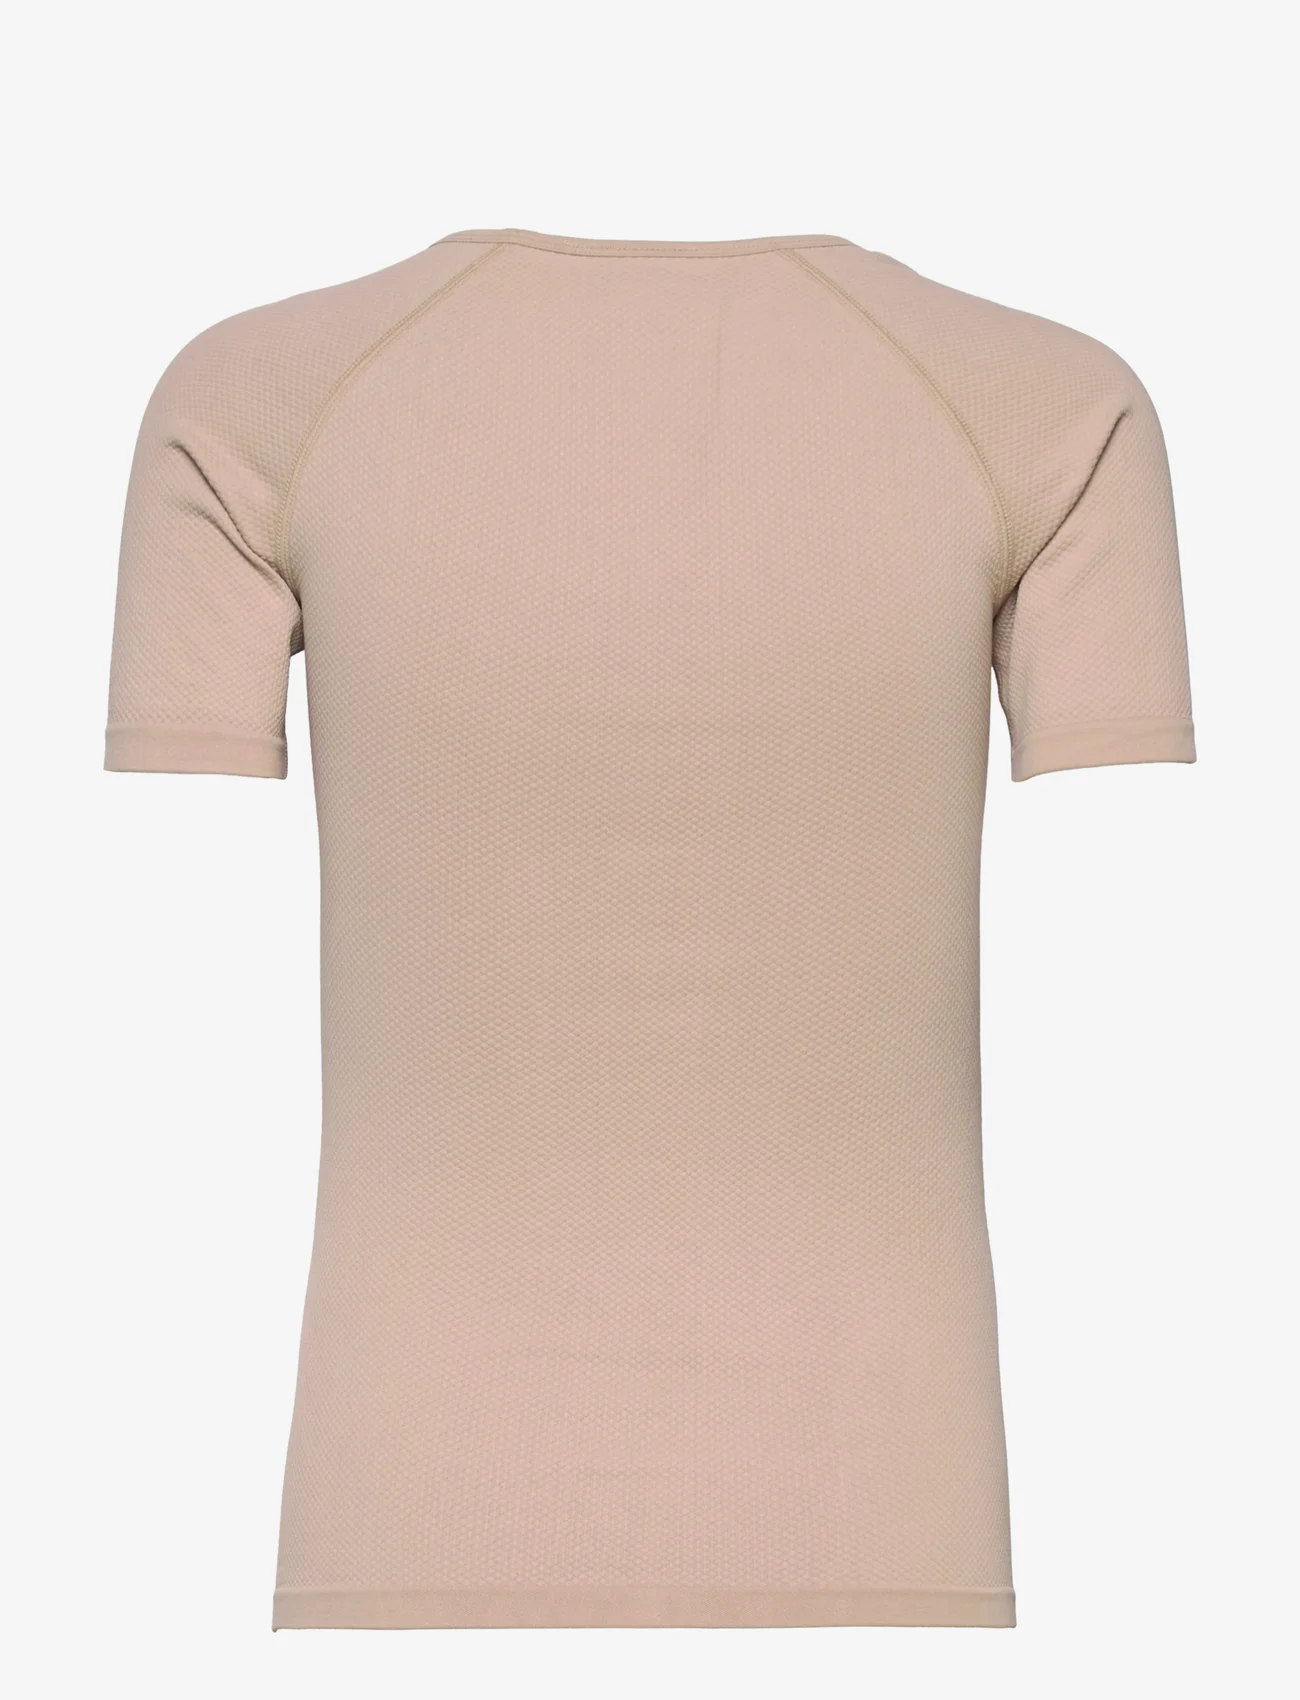 AIM'N - Luxe Seamless Short Sleeve - sport tops - solid beige - 1